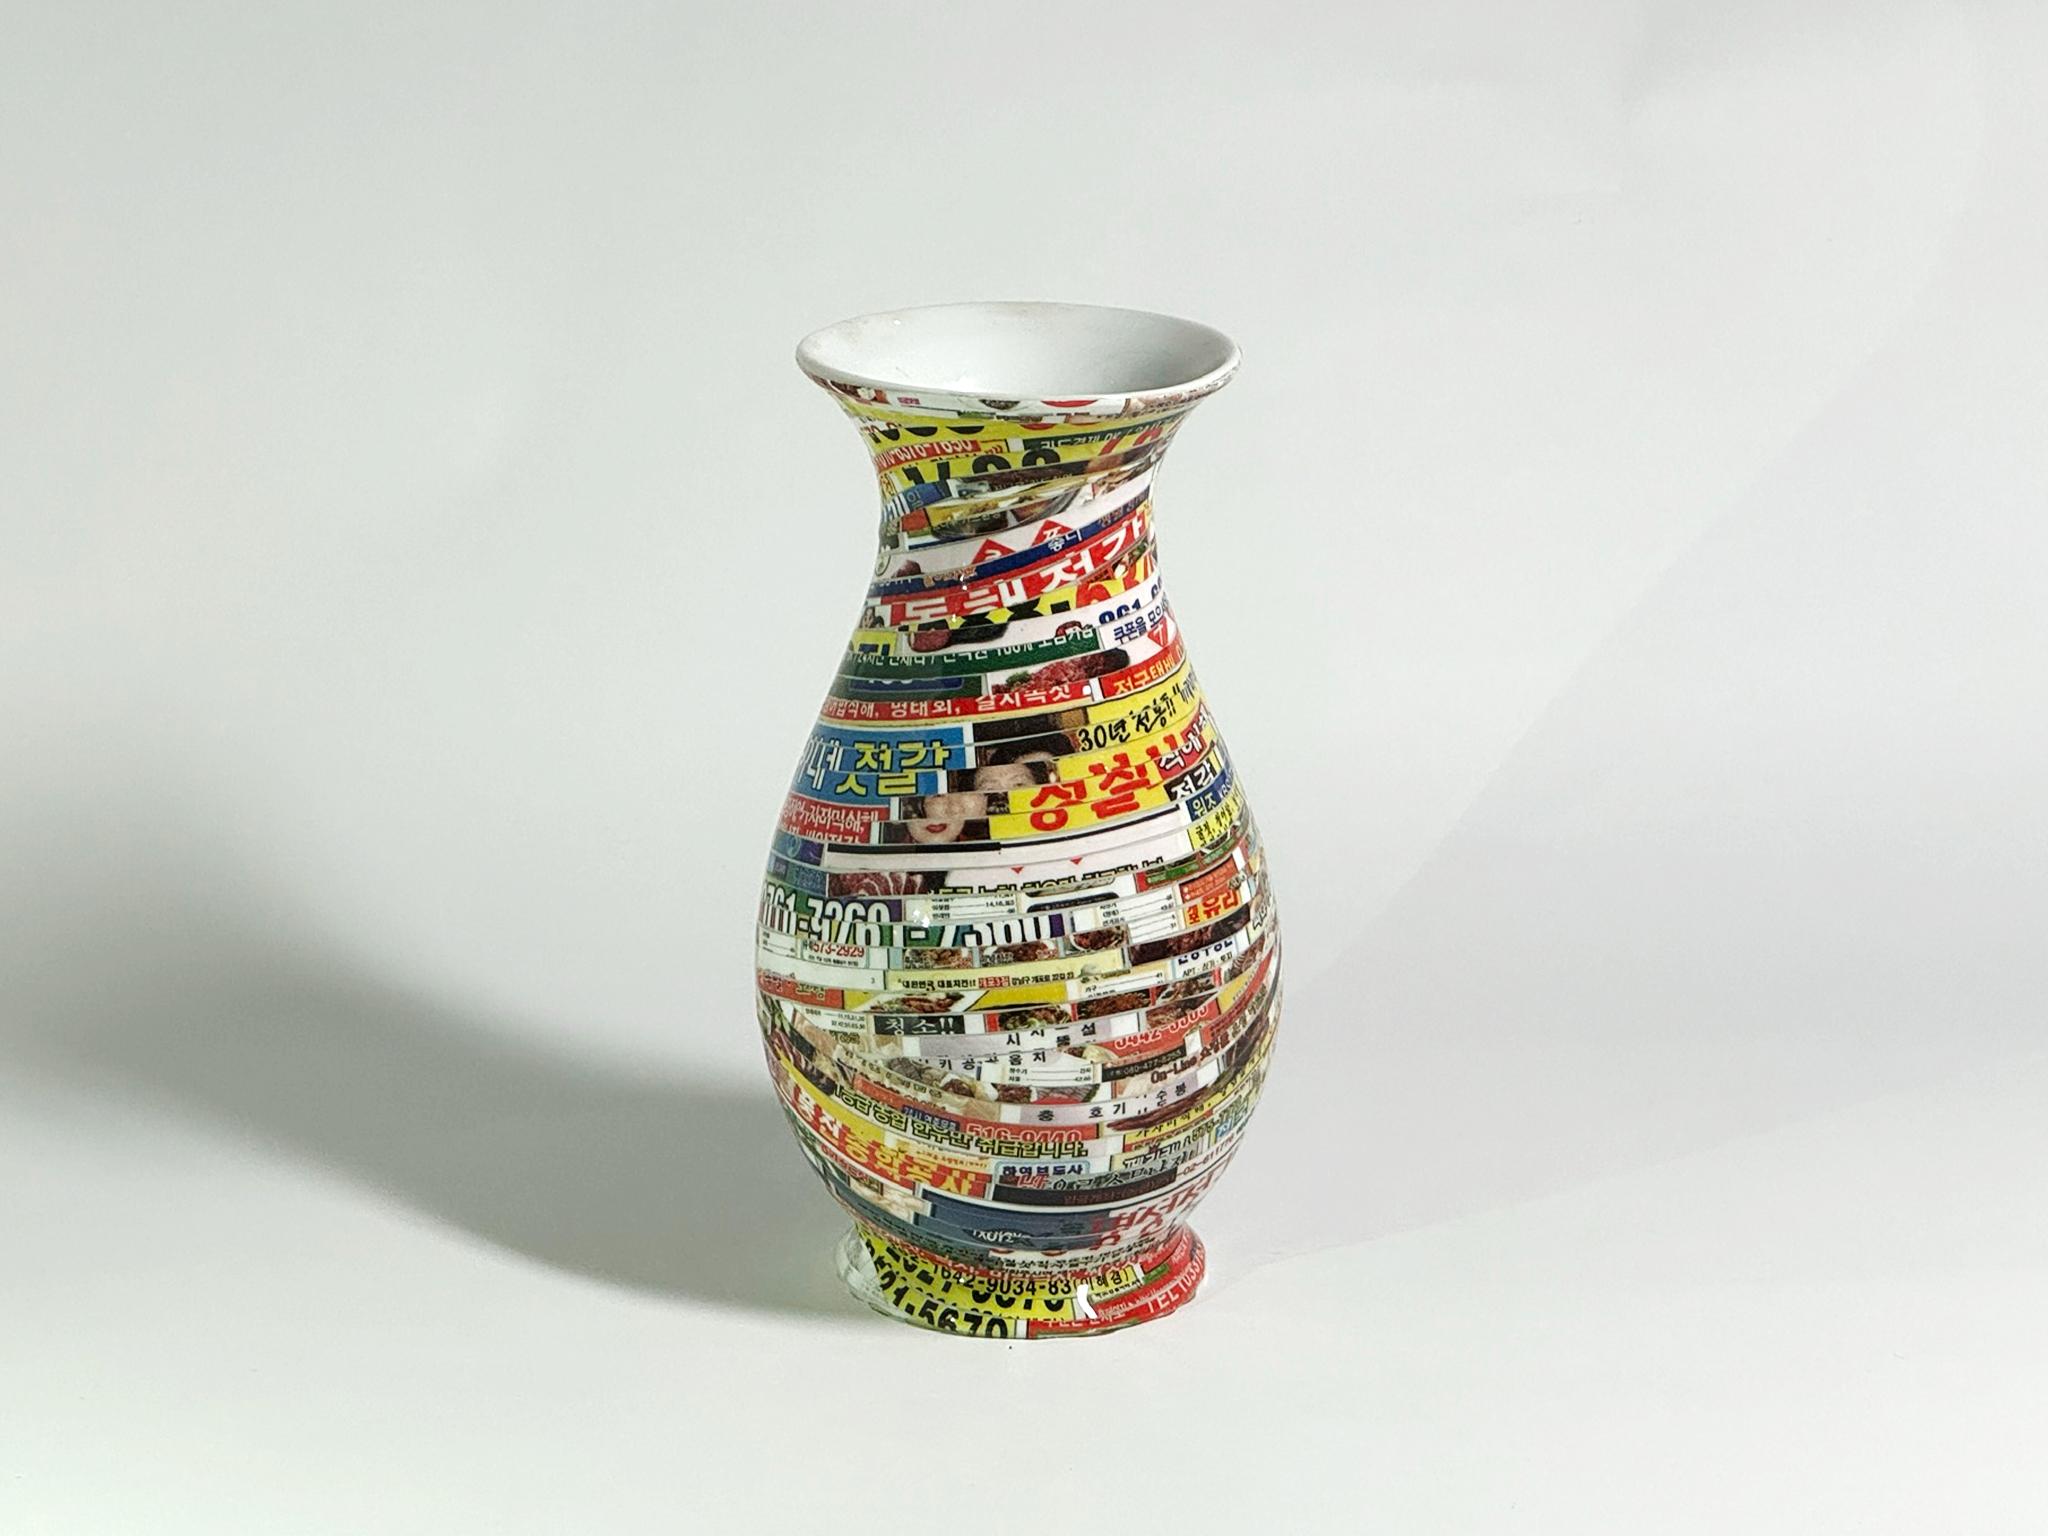 Jjirasi-Vase #06, 2021 von Yongwon Noh
Aus der Serie Jjirasi 
Keramik, PVC-Aufkleber und Harz
Größe: 6,6 Zoll. H x 3.5 in. W x 3.5 in. D
Gewicht: 3kg Unverpackt
Einzigartiges Stück
Signatur auf dem Boden der Vase

Jjirasi Vase erforscht die